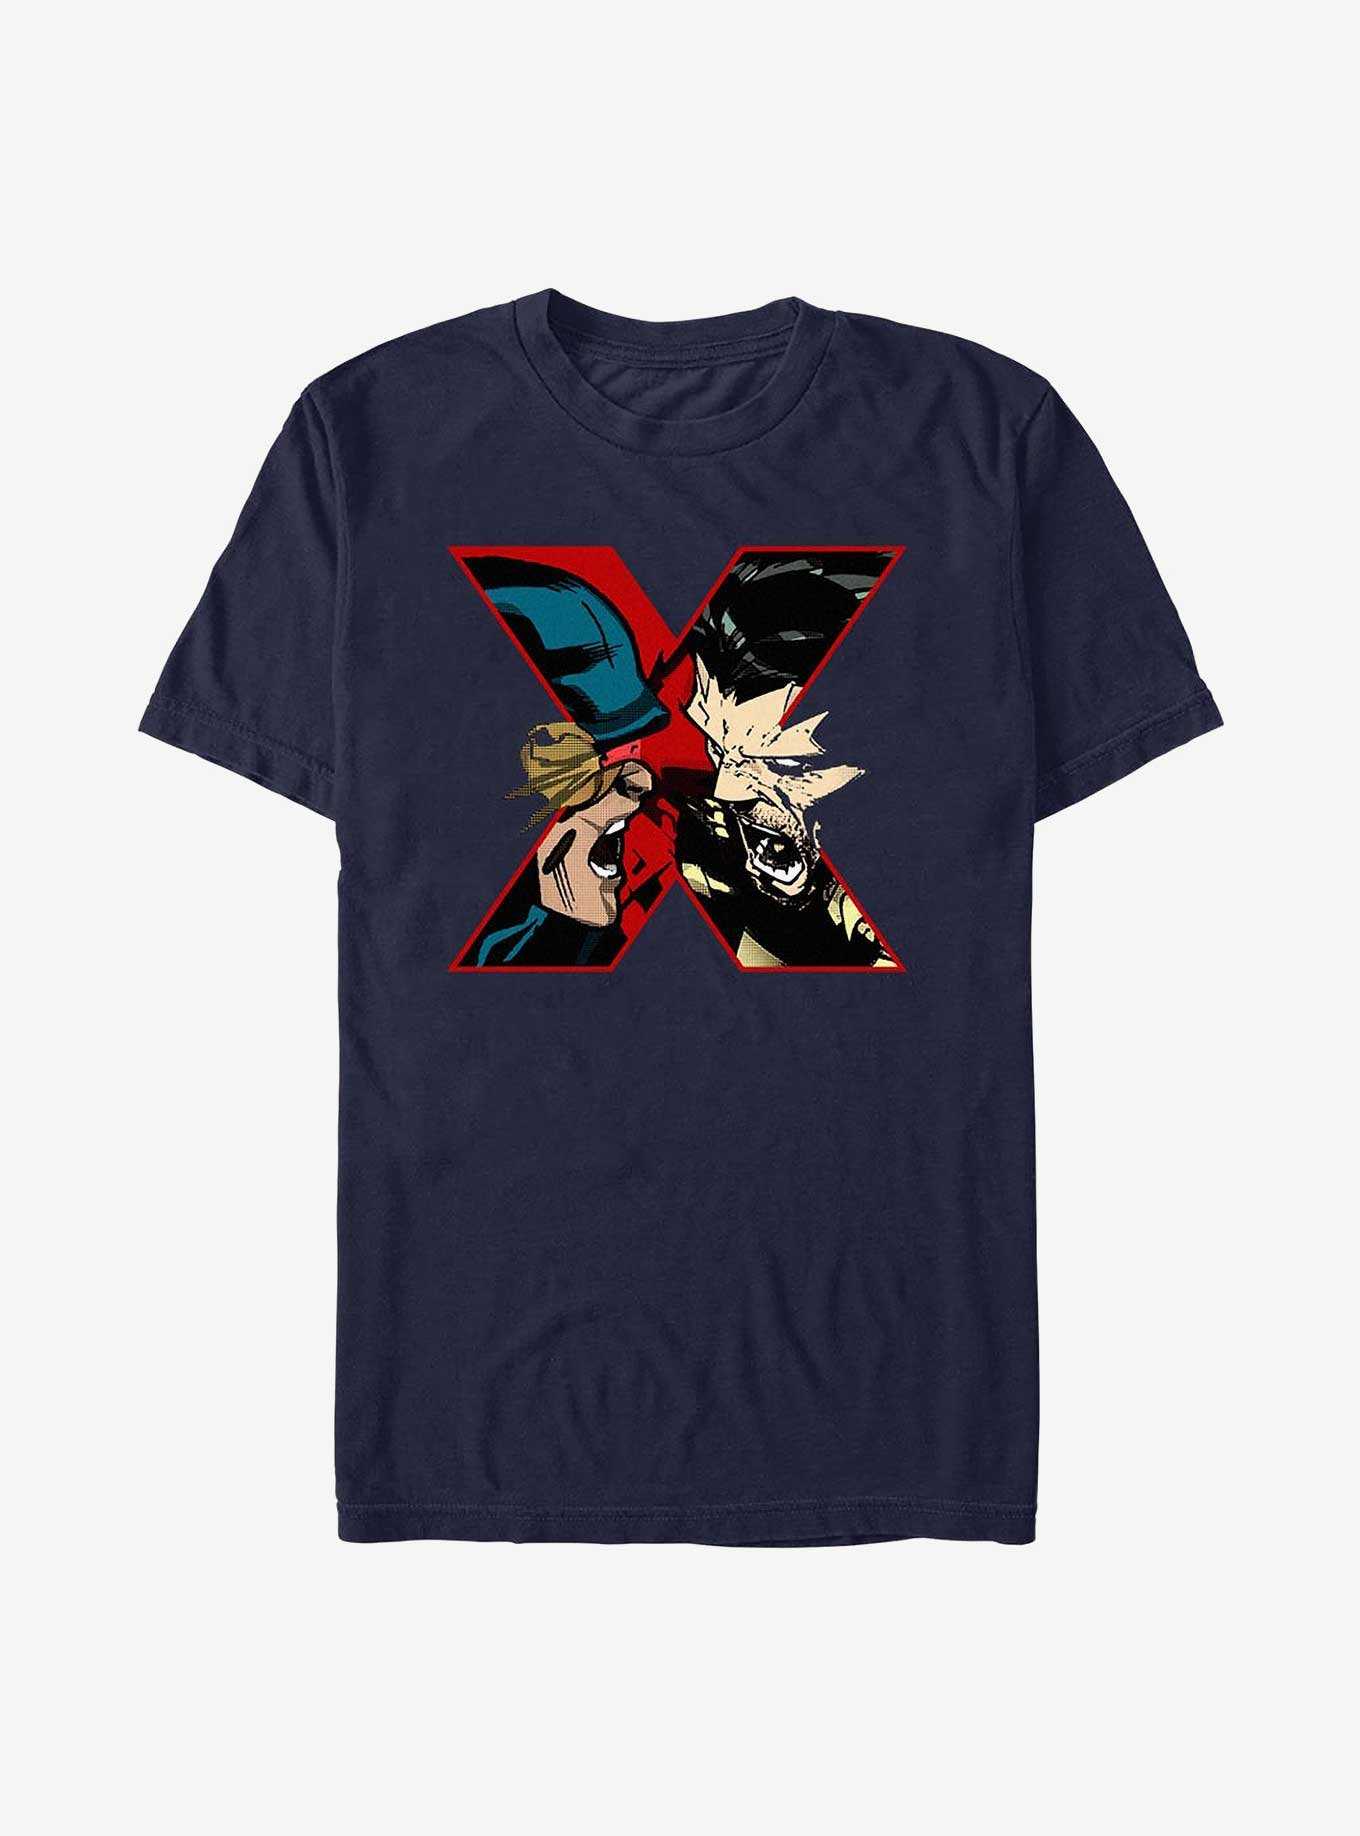 X-Men Cyclops X Wolverine T-Shirt, , hi-res